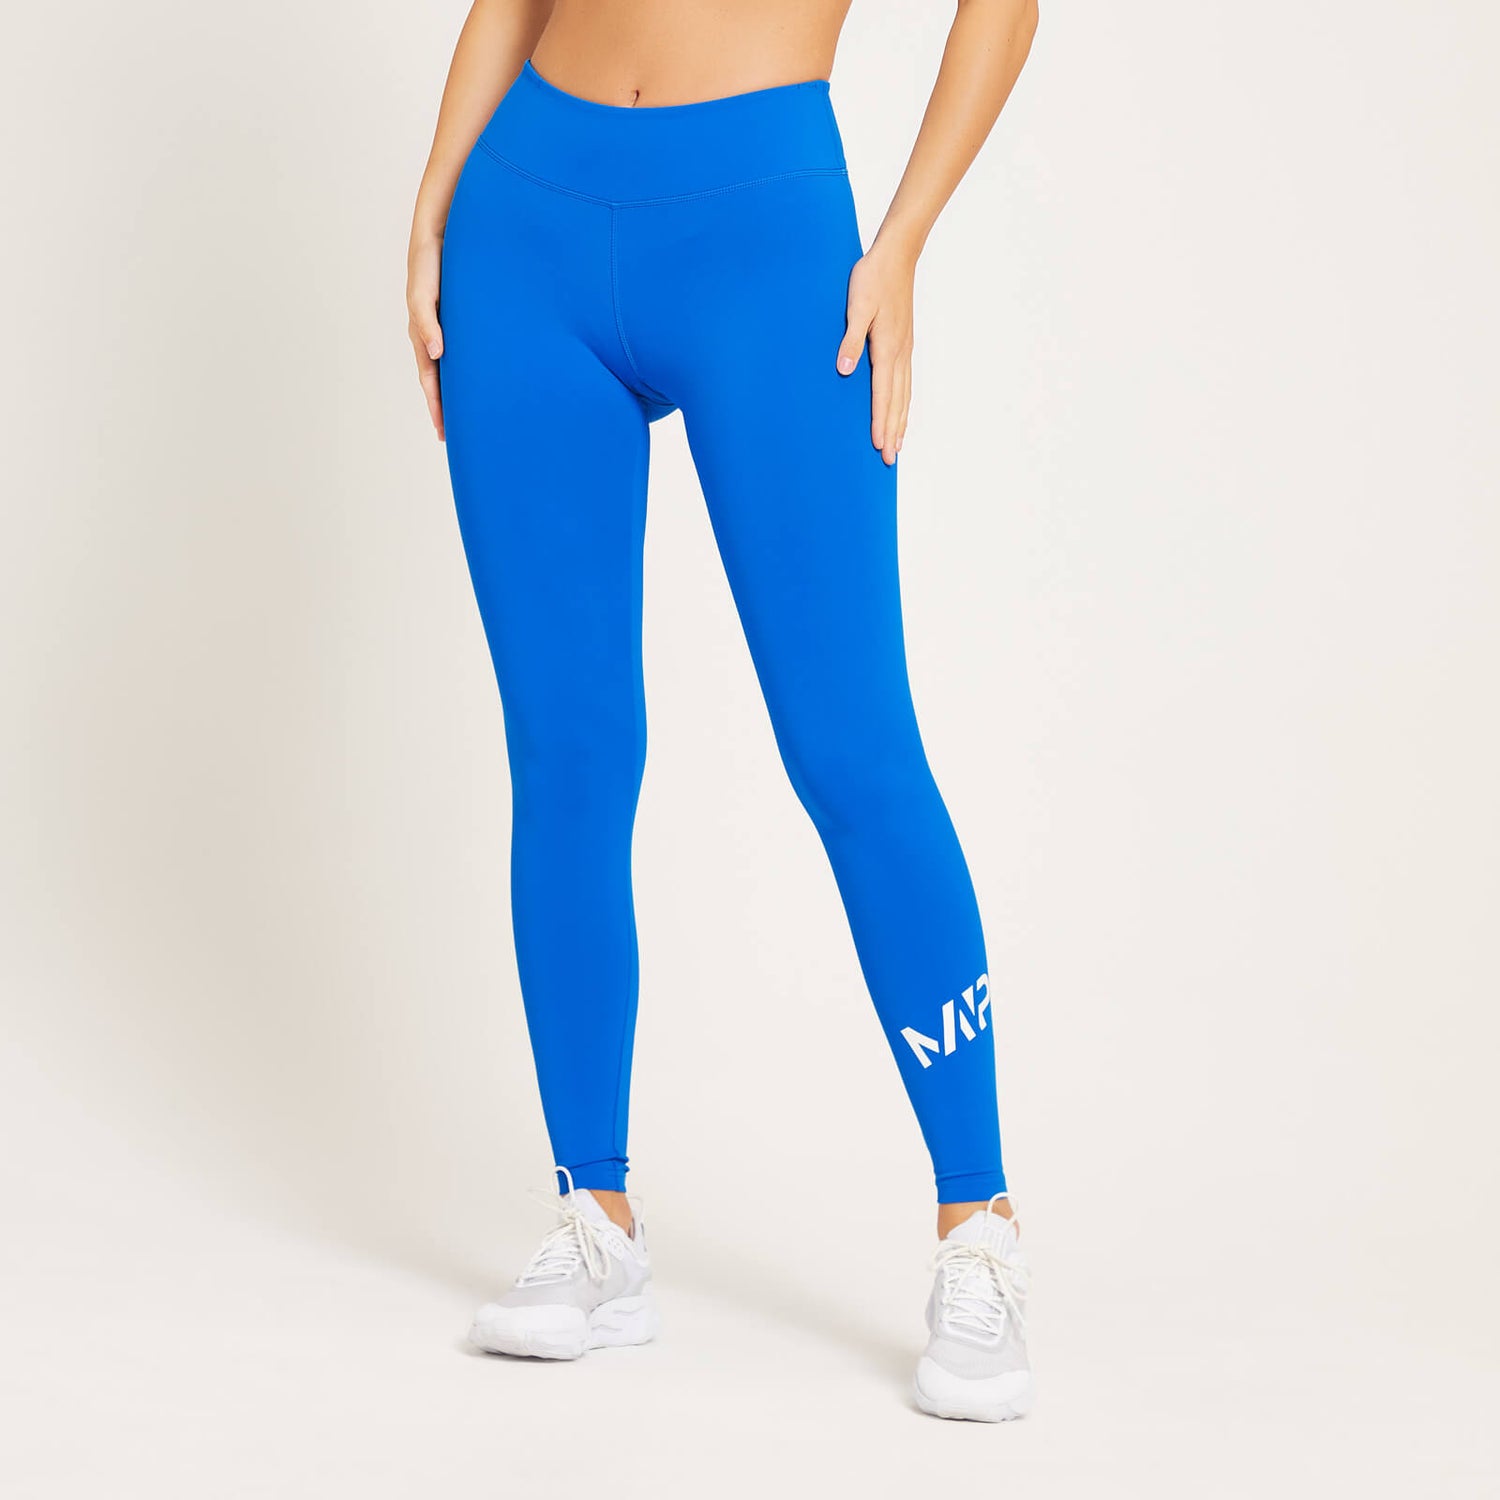 Naisten MP Training -leggingsit - Voimakkaan siniset - XS